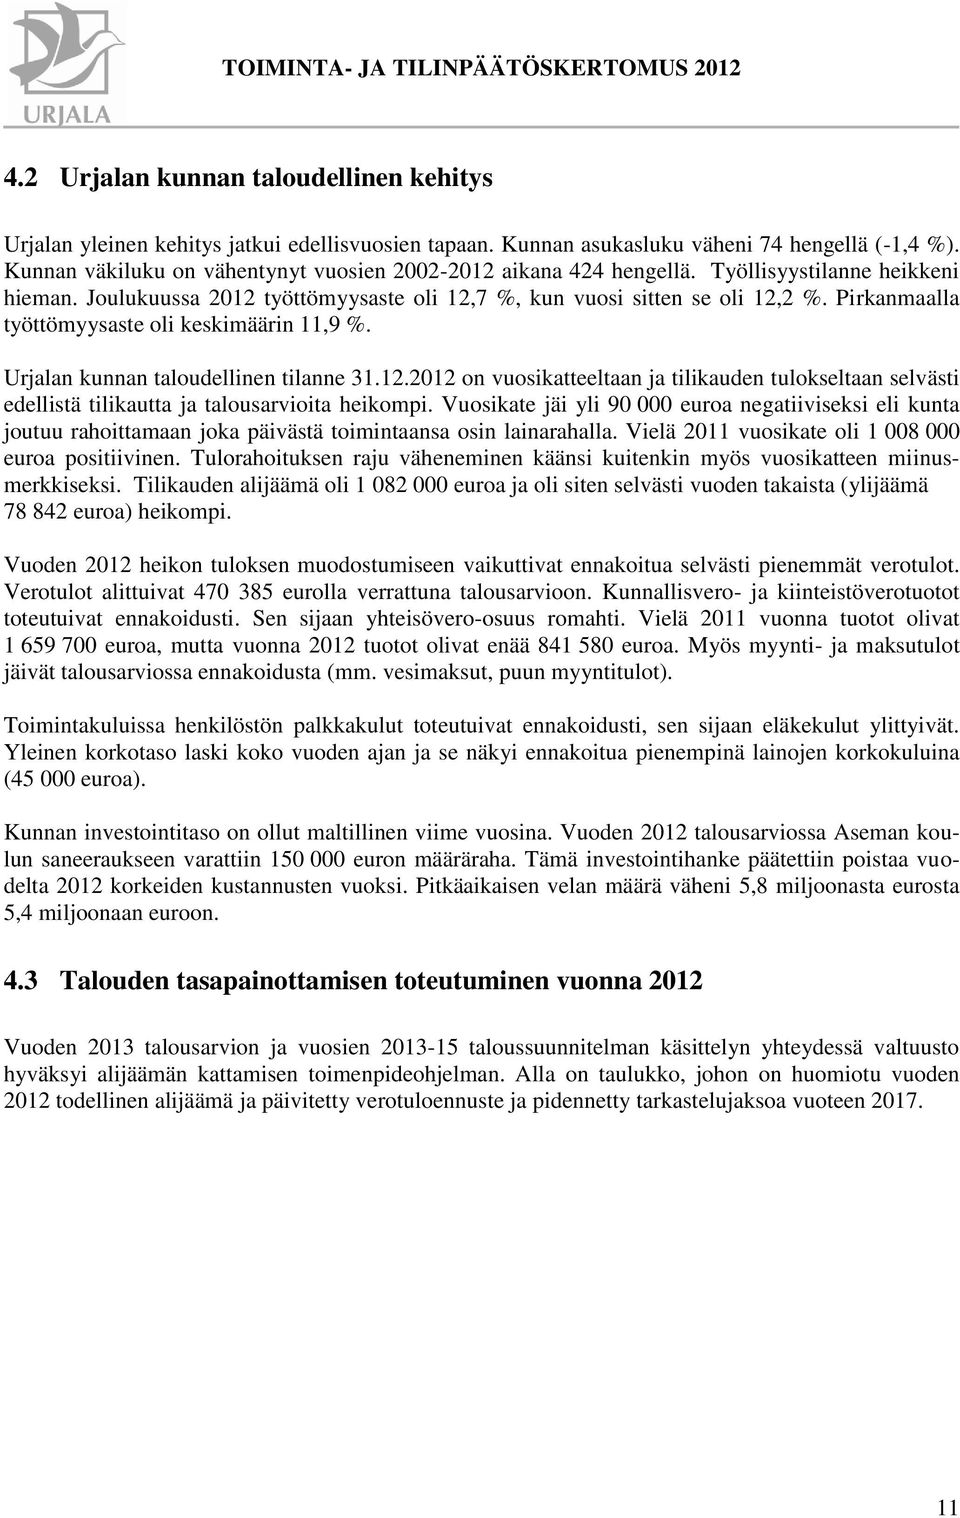 Pirkanmaalla työttömyysaste oli keskimäärin 11,9 %. Urjalan kunnan taloudellinen tilanne 31.12.2012 on vuosikatteeltaan ja tilikauden tulokseltaan selvästi edellistä tilikautta ja ita heikompi.